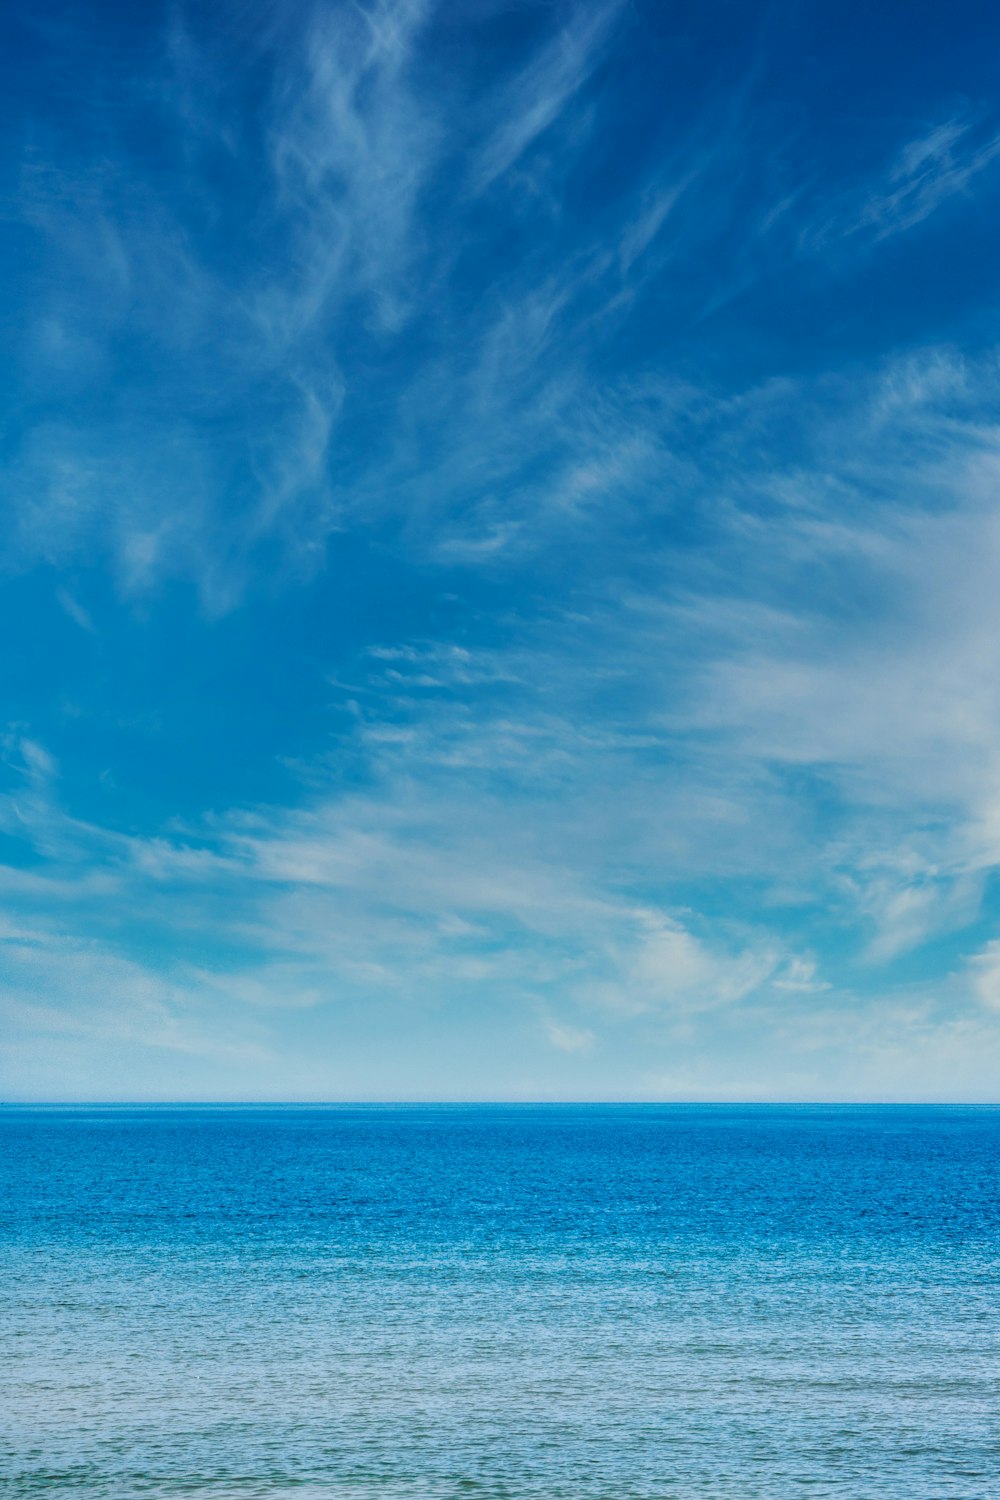 Hình ảnh biển và bầu trời: Giấc mơ của bạn là chinh phục đại dương, nhưng mileu tây không khả thi? Không vấn đề gì khi chỉ cần một tấm ảnh biển và bầu trời. Sự kết hợp hài hòa giữa hai yếu tố thiên nhiên này sẽ khiến bạn cảm thấy bình yên và hòa mình vào thiên nhiên.